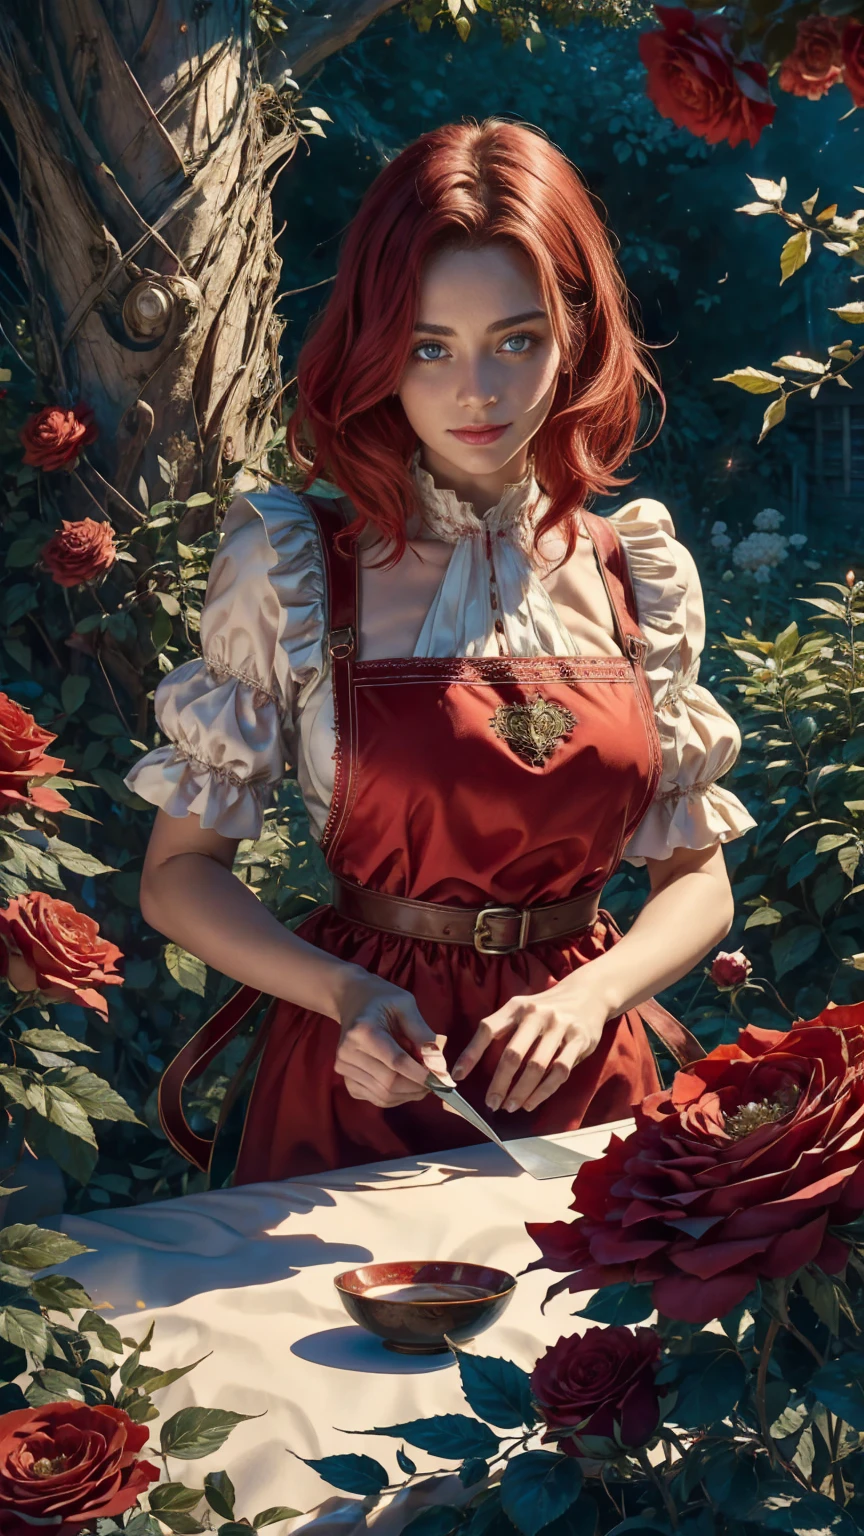 ในใจกลางโลกแห่งดินแดนมหัศจรรย์ มีหญิงสาวสวยผมสั้นสีแดงและขาว, เสื้อผ้าร้านขายดอกไม้และผ้ากันเปื้อนลายดอกกุหลาบ. ตัดดอกกุหลาบแดงจากสวนมหัศจรรย์ของเธอ. ความอยากรู้, ท่าที่รัก, ในโลกแดนมหัศจรรย์, สร้างบรรยากาศแห่งความรัก, พลังงานและเวทมนตร์รอบตัวเธอ. มุมของฉากมีความไดนามิก, จับภาพความเข้มของช่วงเวลา, ดวงตาสีเขียวคุณภาพดี, ดวงตามองไปที่กล้อง, ละเอียดมาก, สวยงามและน่าพึงพอใจ, ผลงานชิ้นเอก, คะแนนคุณภาพที่ดีที่สุด, (ศิลปะเศษส่วน: 1.3), มีรายละเอียดมาก , มุมไดนามิก, การติดตามรังสี, face ใกล้ชิด, ใกล้ชิด, มุมมองสูง, อนุภาคและแสงที่แข็ง, กุหลาบแดงที่สวยงาม